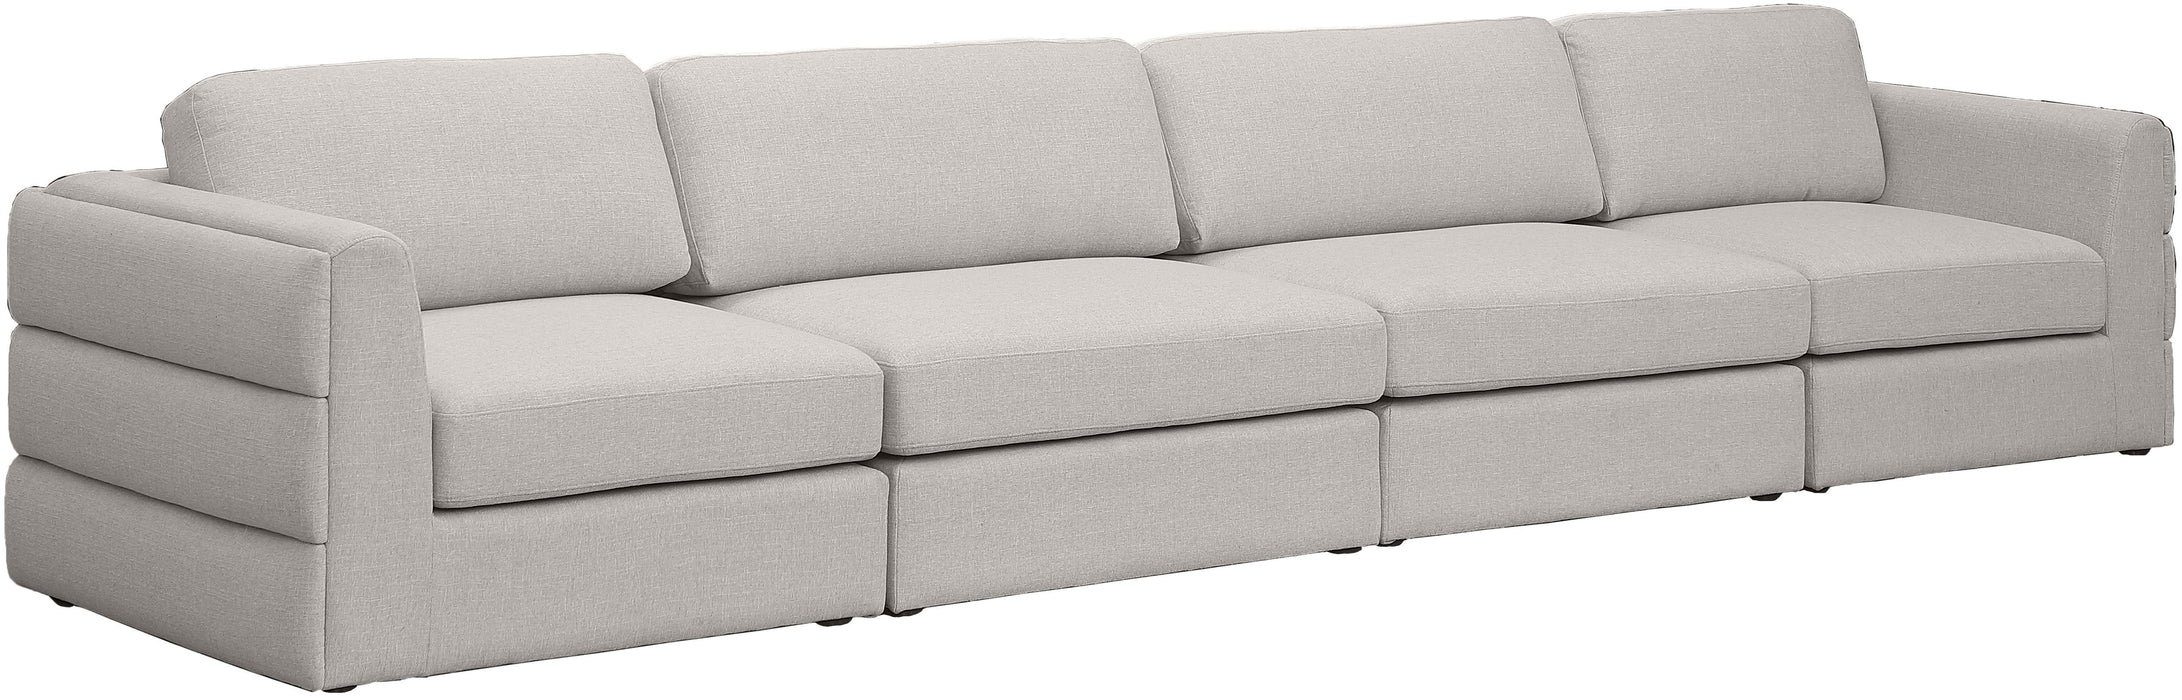 Beckham - 4 Seats Modular Sofa